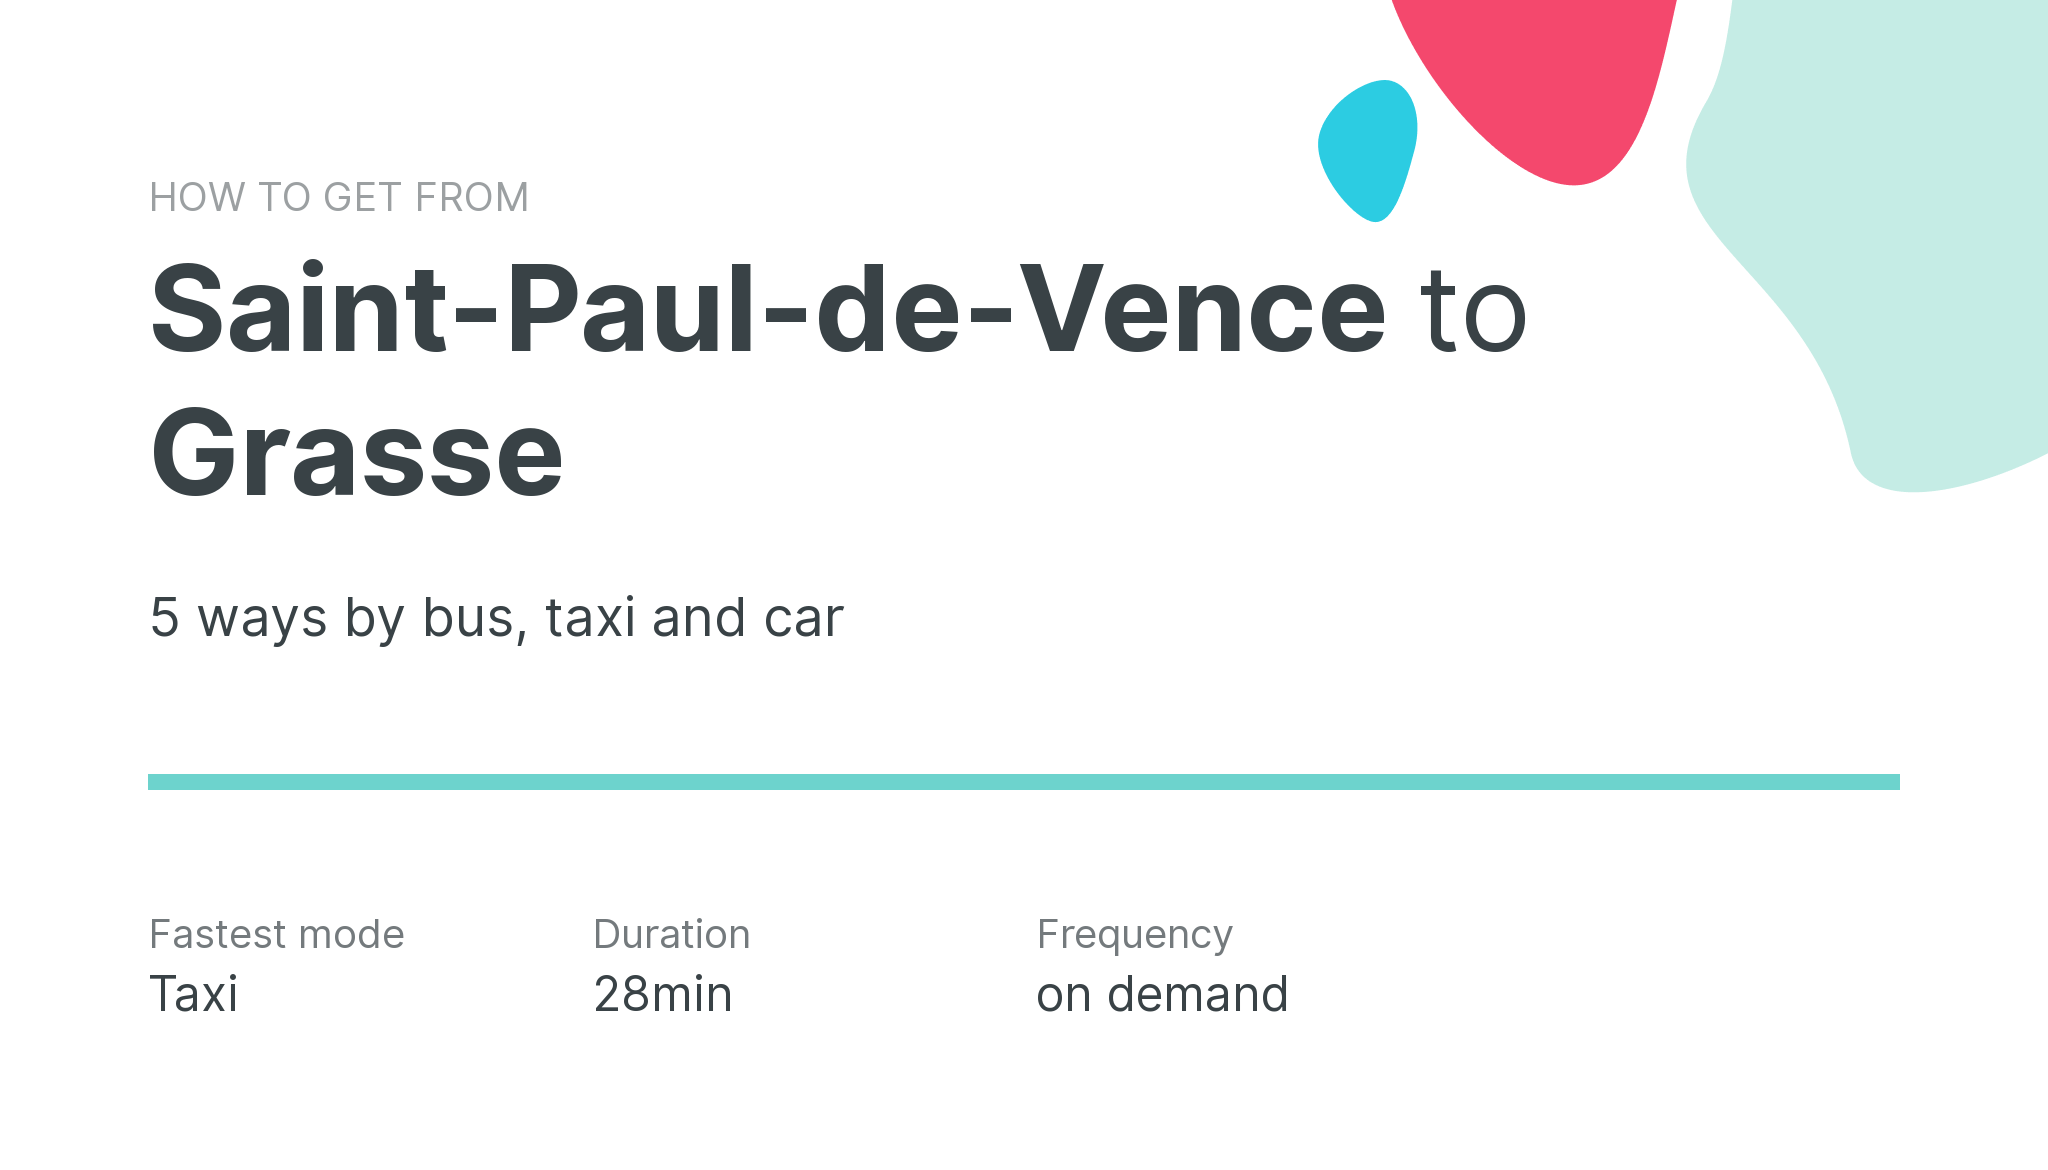 How do I get from Saint-Paul-de-Vence to Grasse